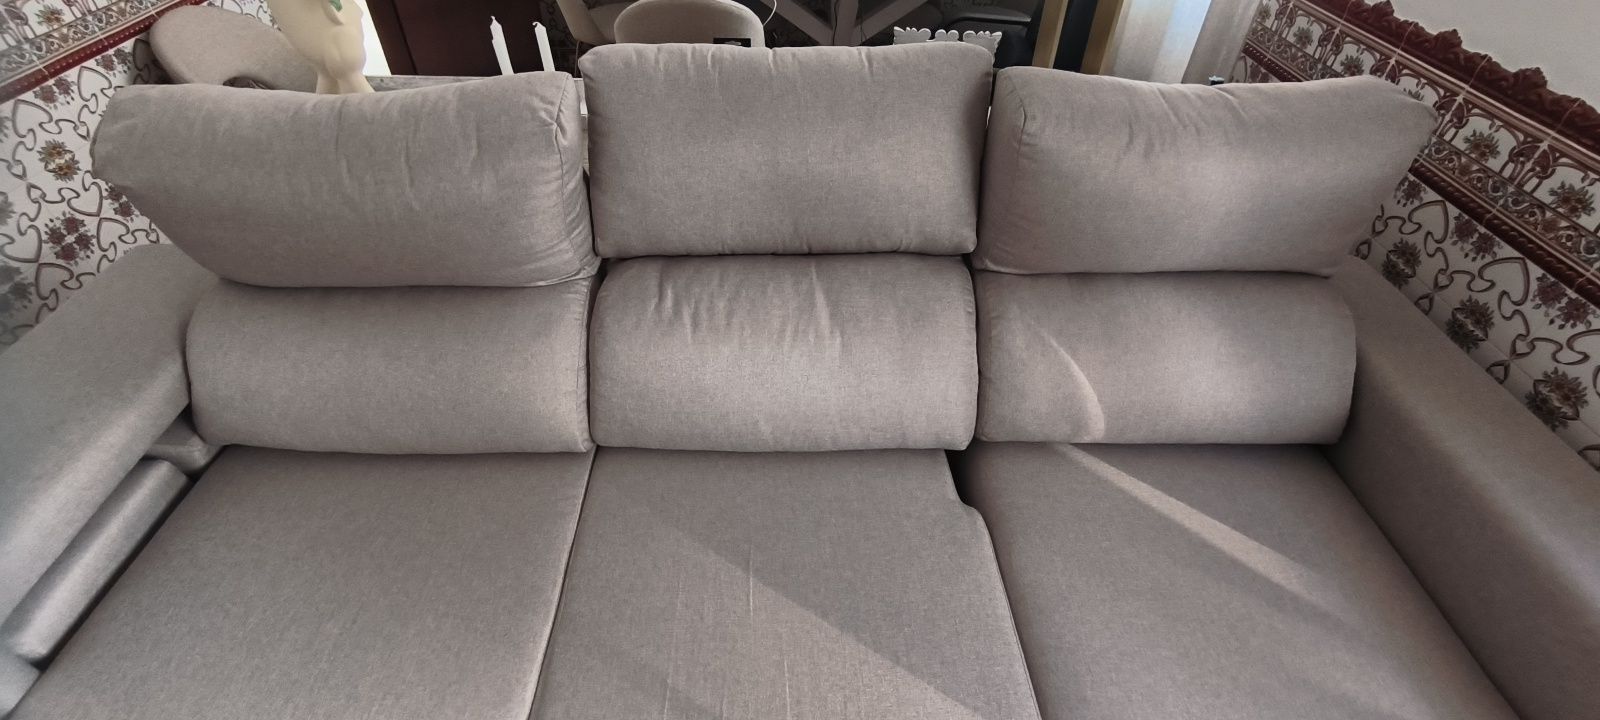 Sofá com chaise long+impermeabilização